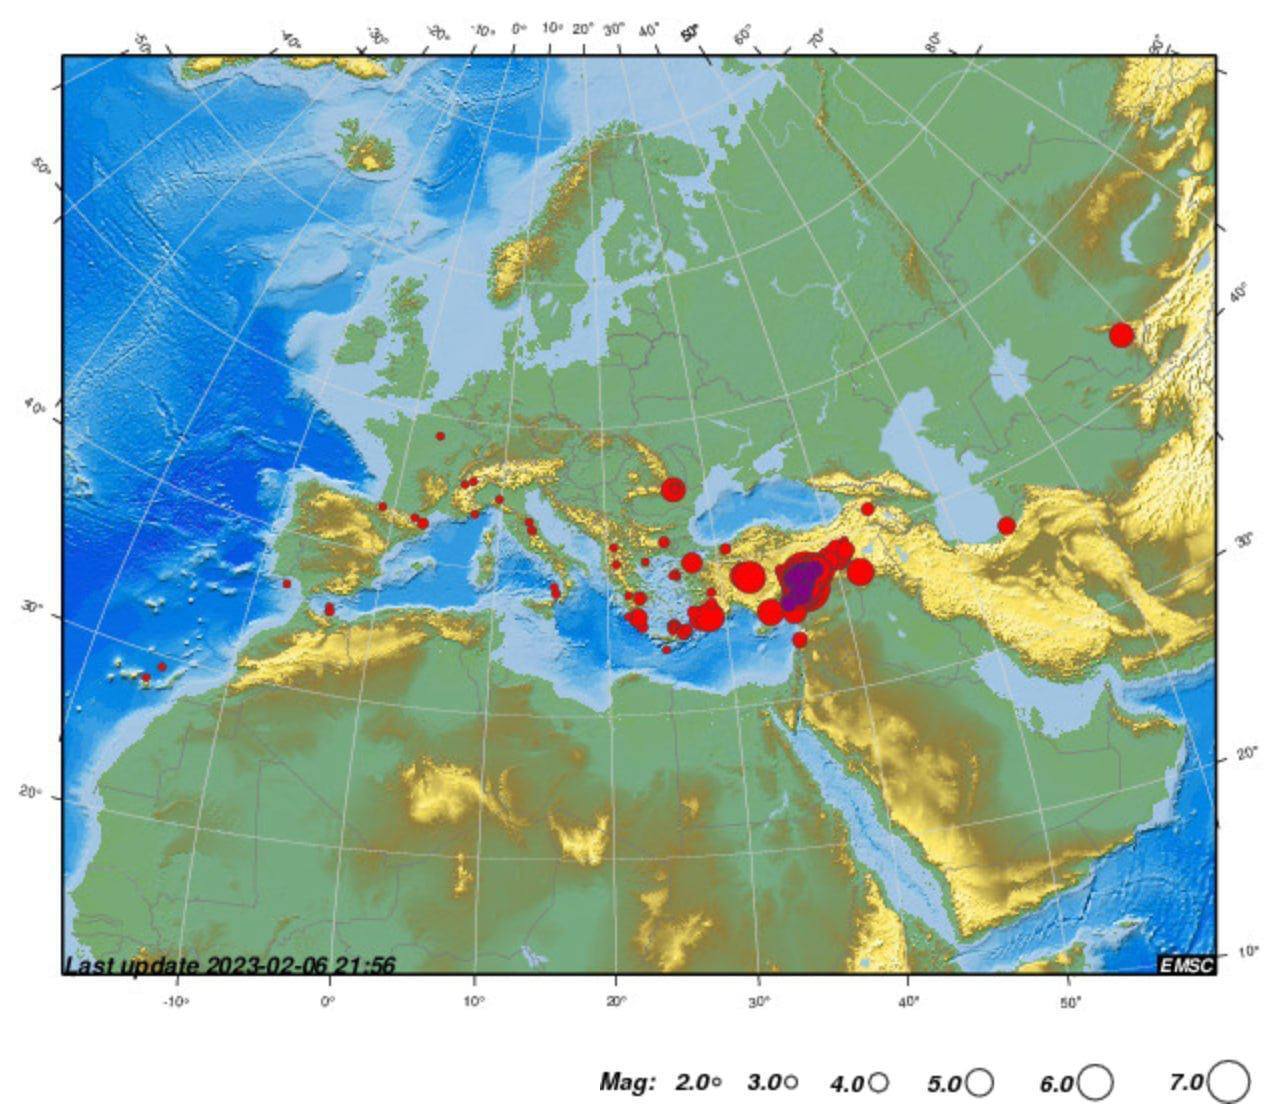 Планета взбунтовалась: новые землетрясения зафиксированы на Тайване, Аляске, в Турции и Аргентине. Карта